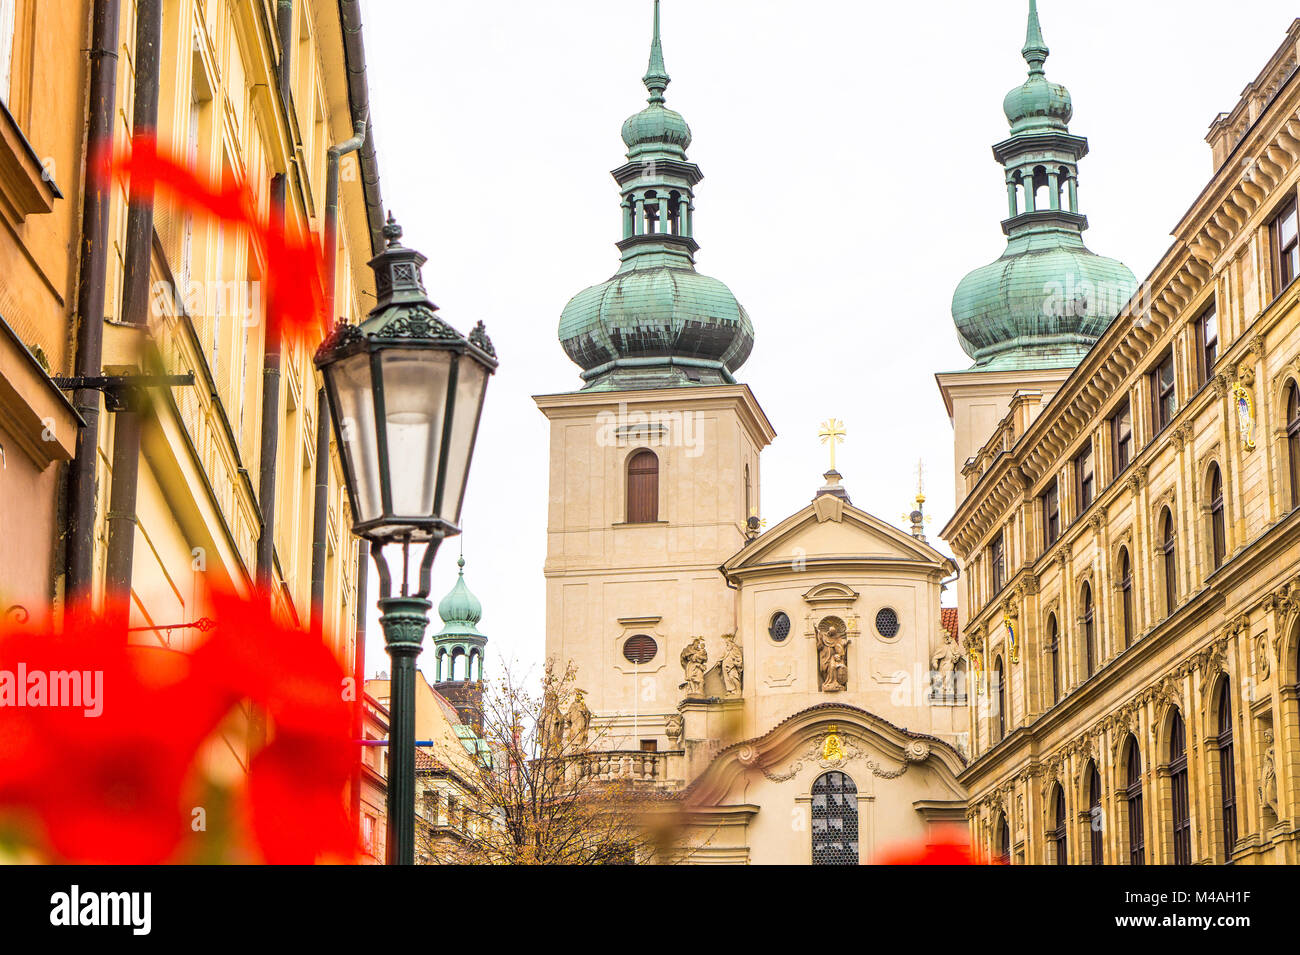 Splendidi edifici, fiori e lampione nella città vecchia di Praga nella Repubblica Ceca. Foto Stock